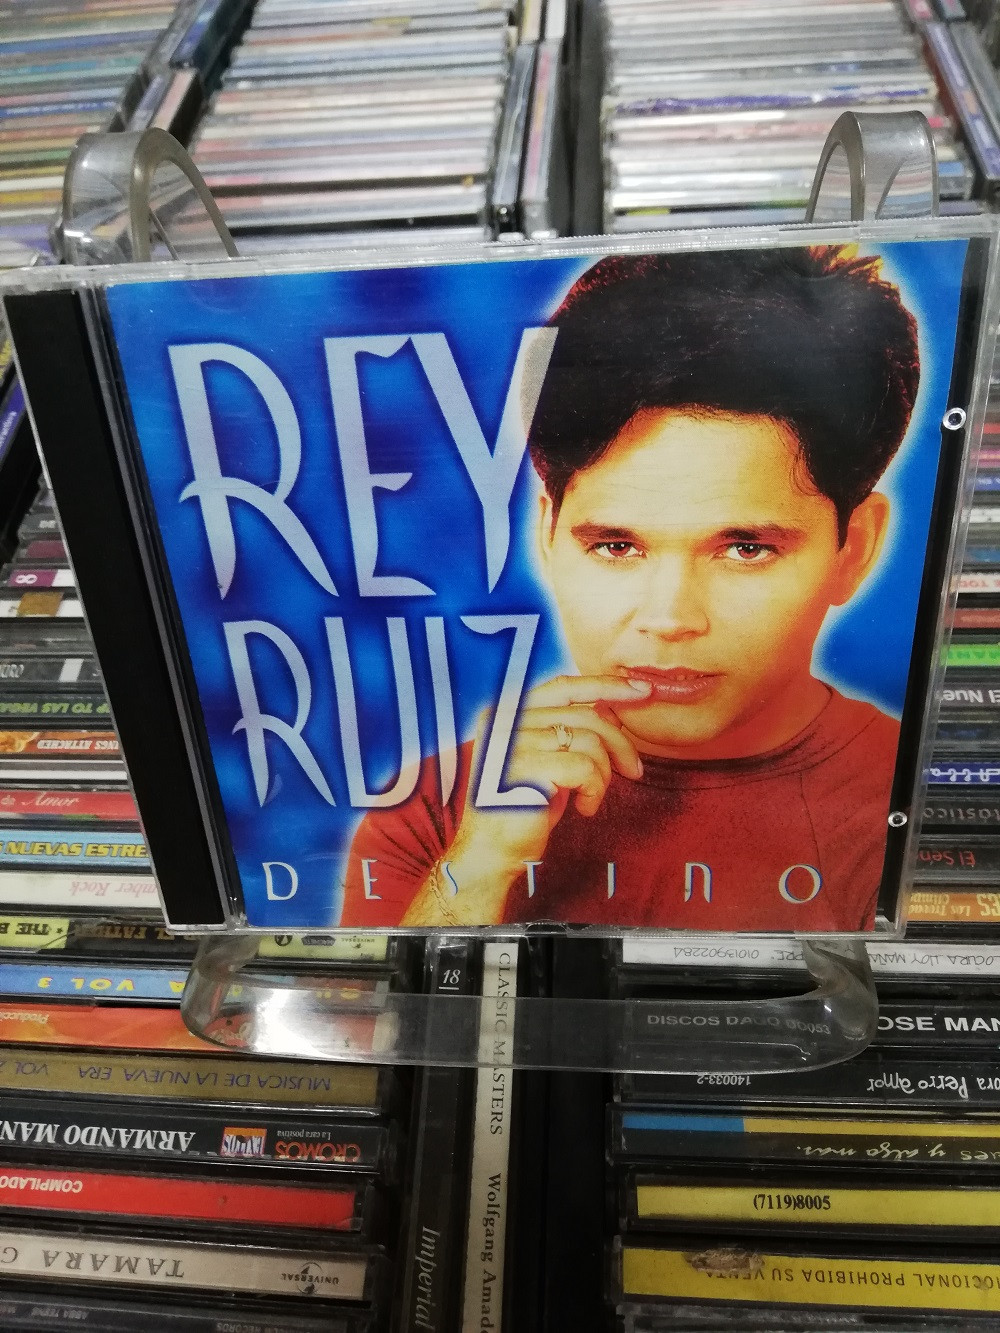 Imagen CD REY RUIZ - DESTINO 1